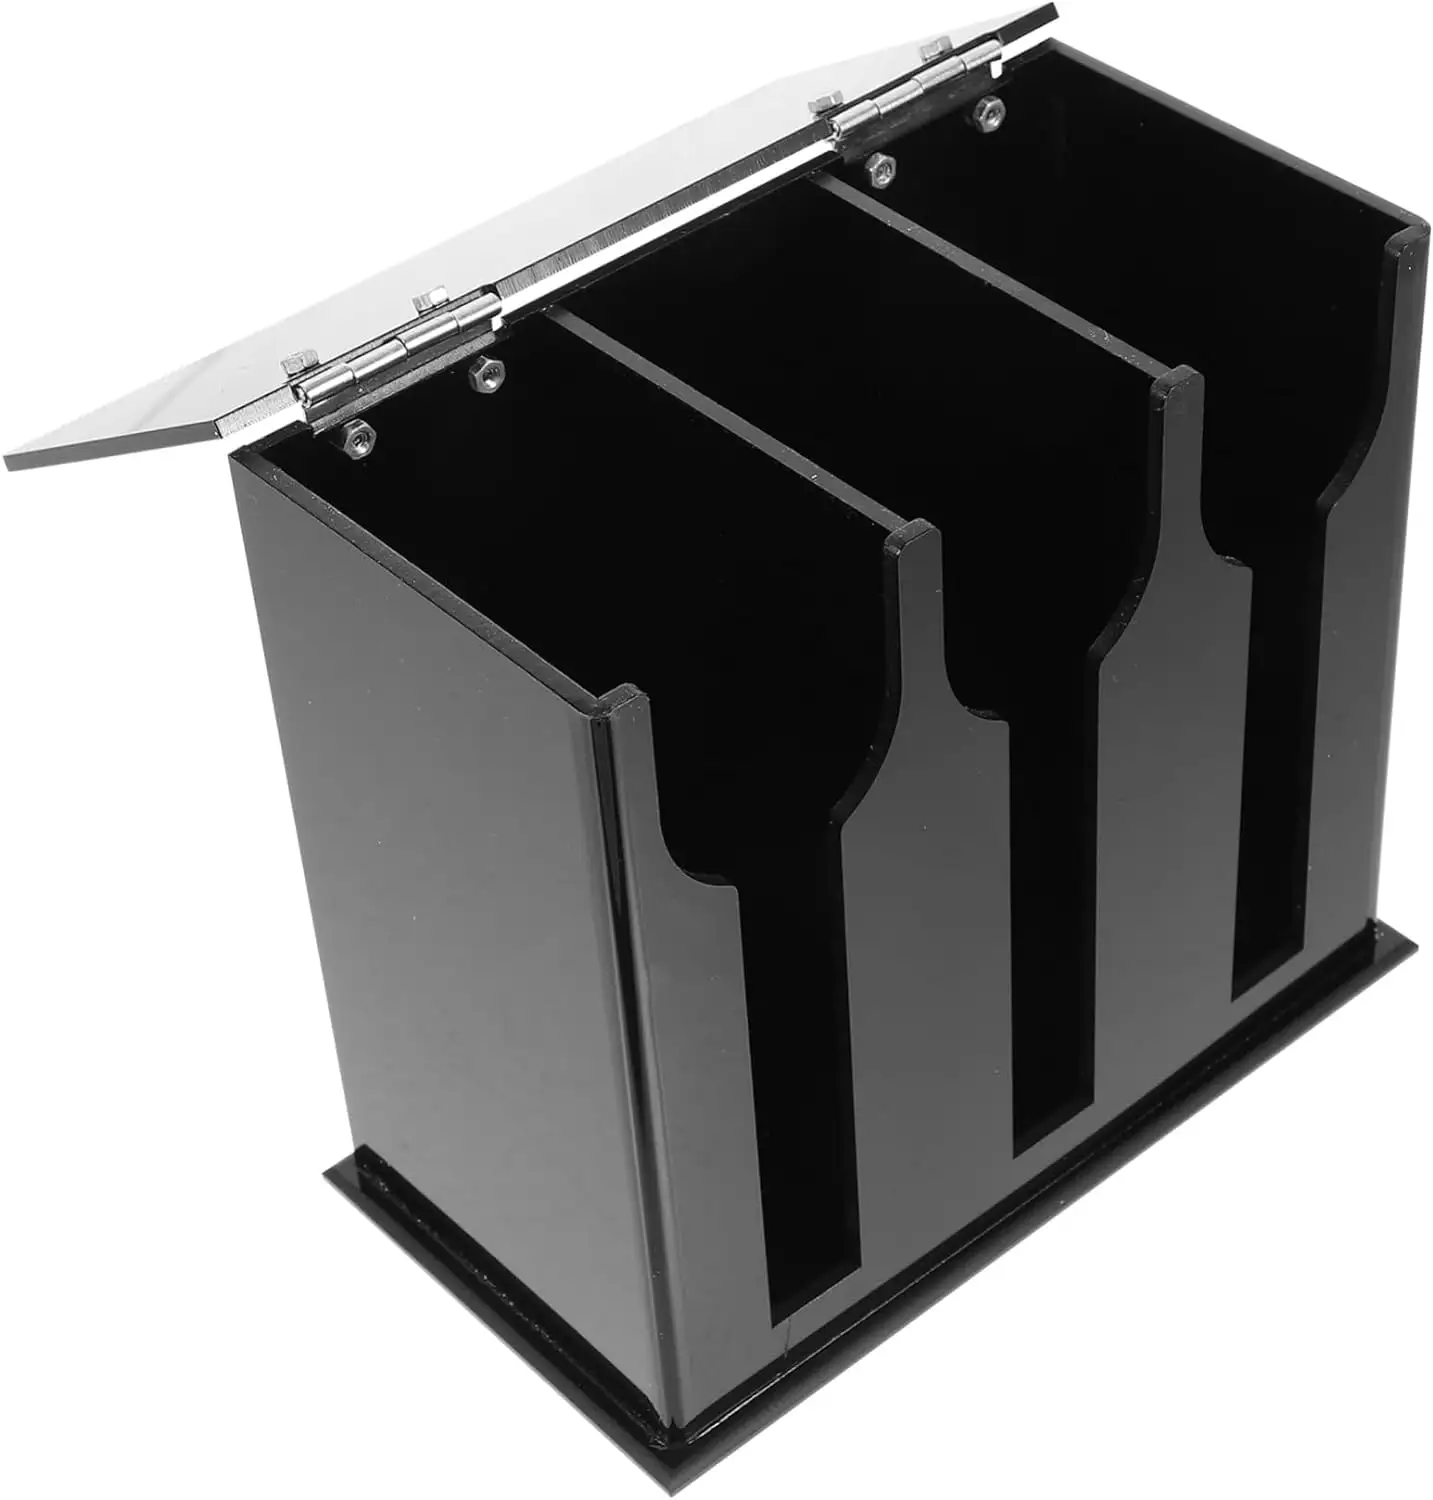 Rack de exibição de talheres com 3 compartimentos para colheres em acrílico preto apenas para exibição